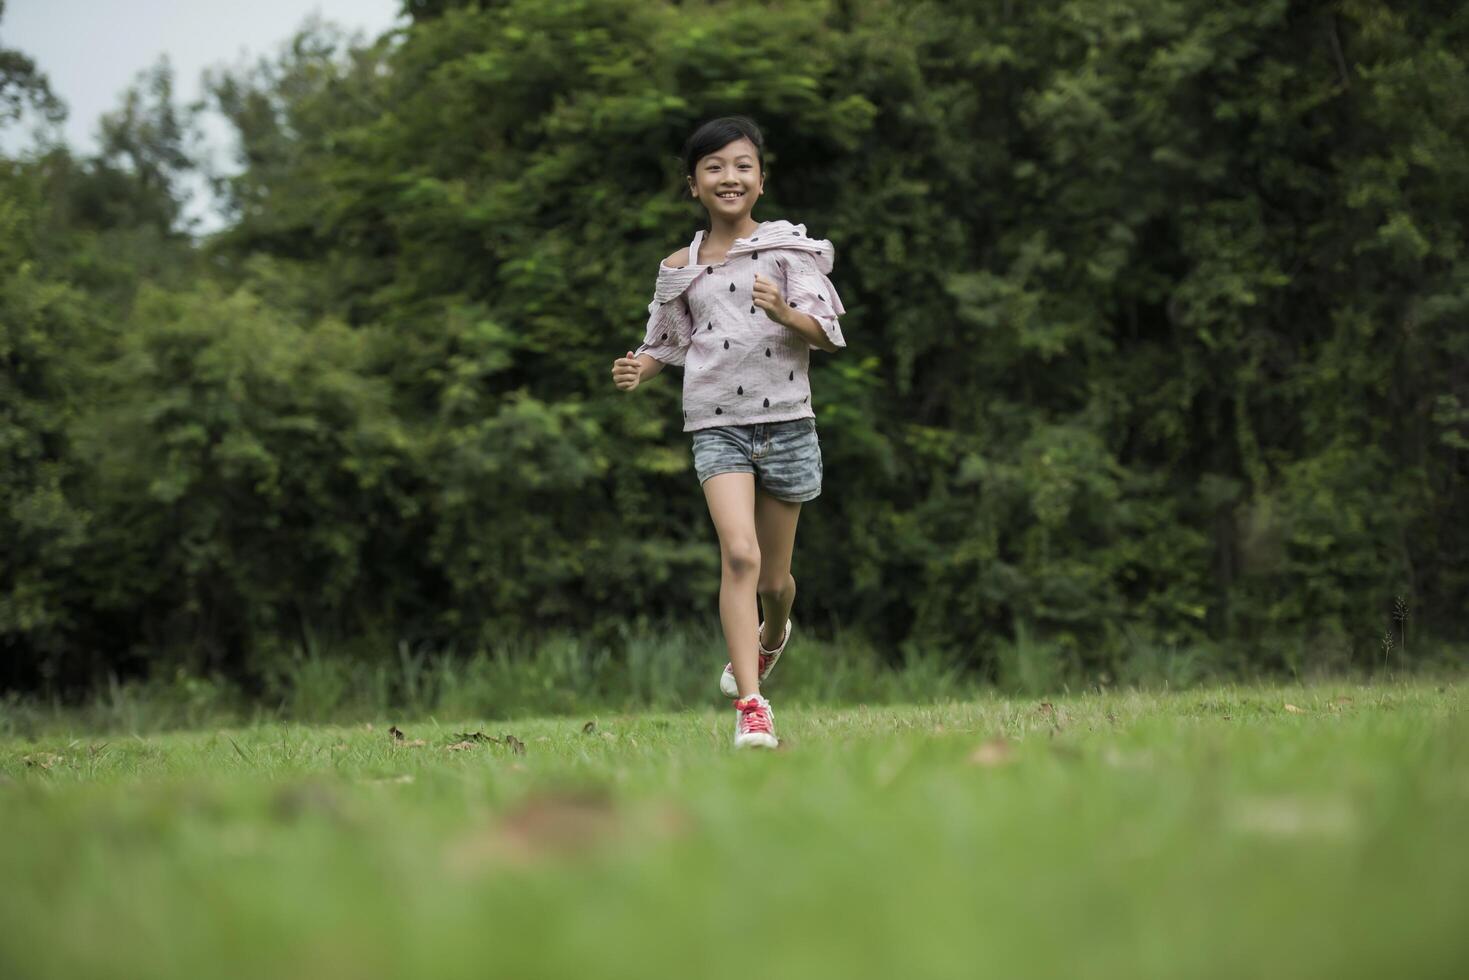 glad söt liten flicka som springer på gräset i parken foto